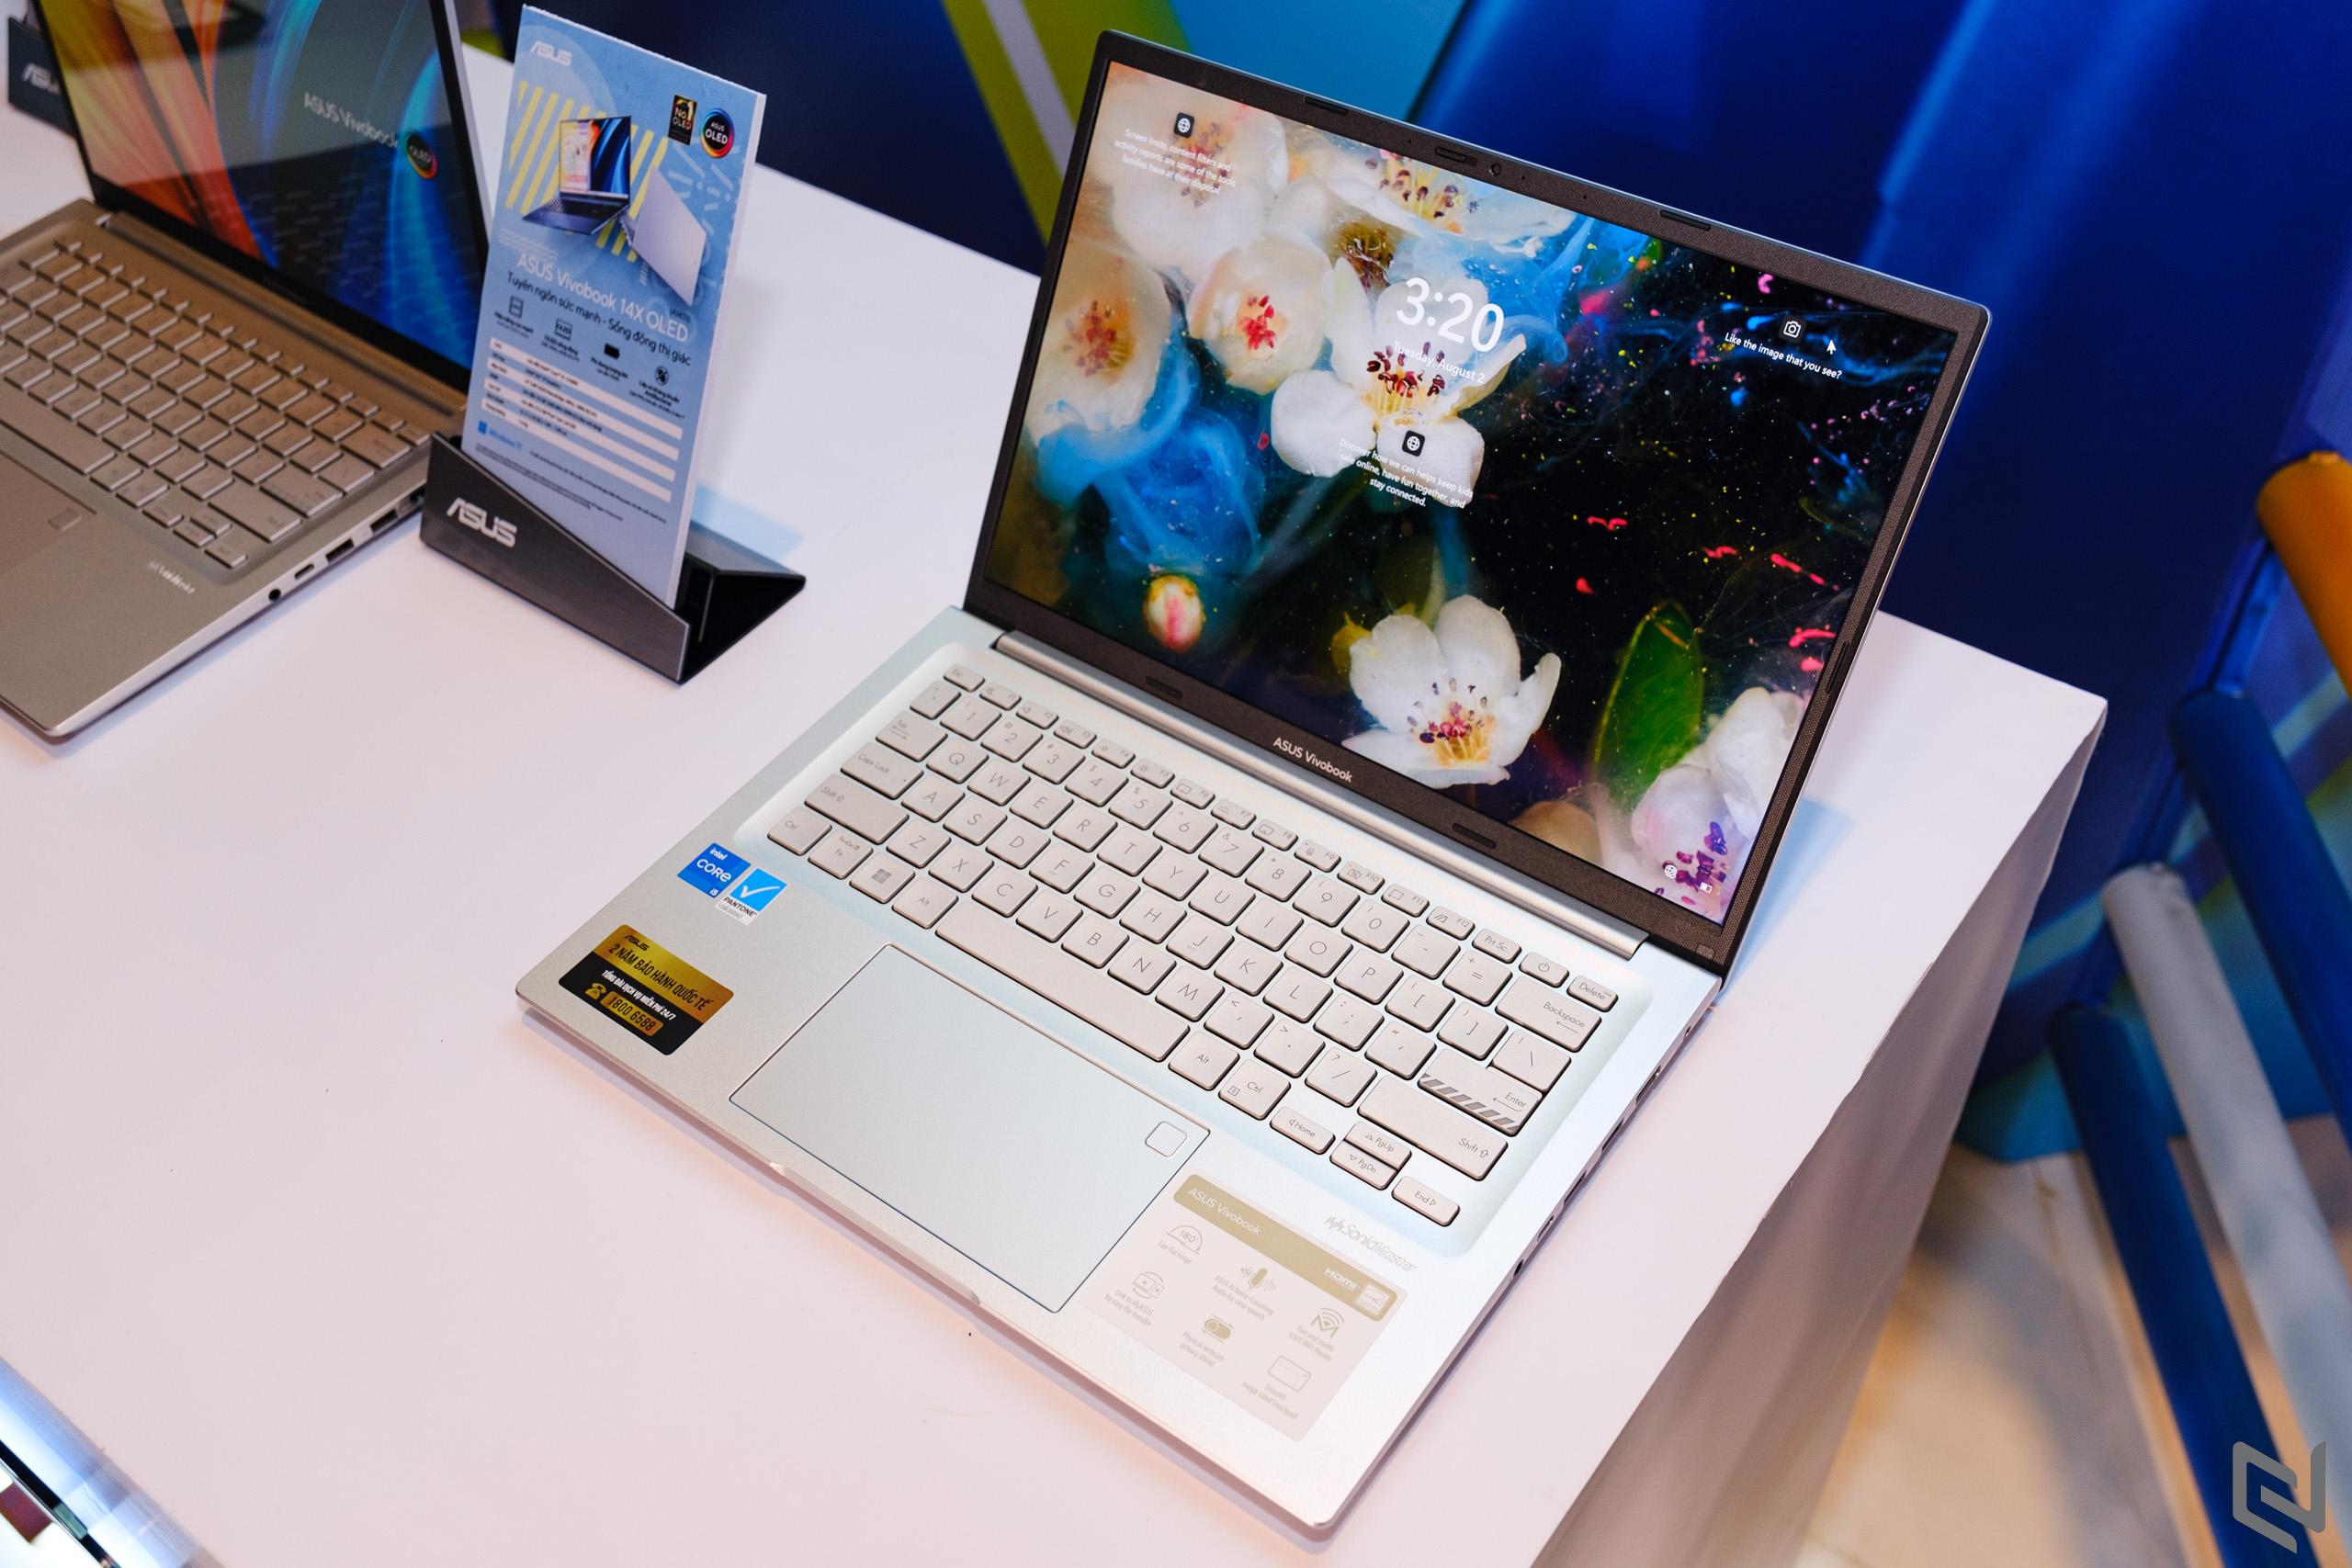 ASUS Việt Nam ra mắt Vivobook 14X/15X OLED - Laptop dành cho giới trẻ trang bị vi xử lí dòng hiệu năng cao